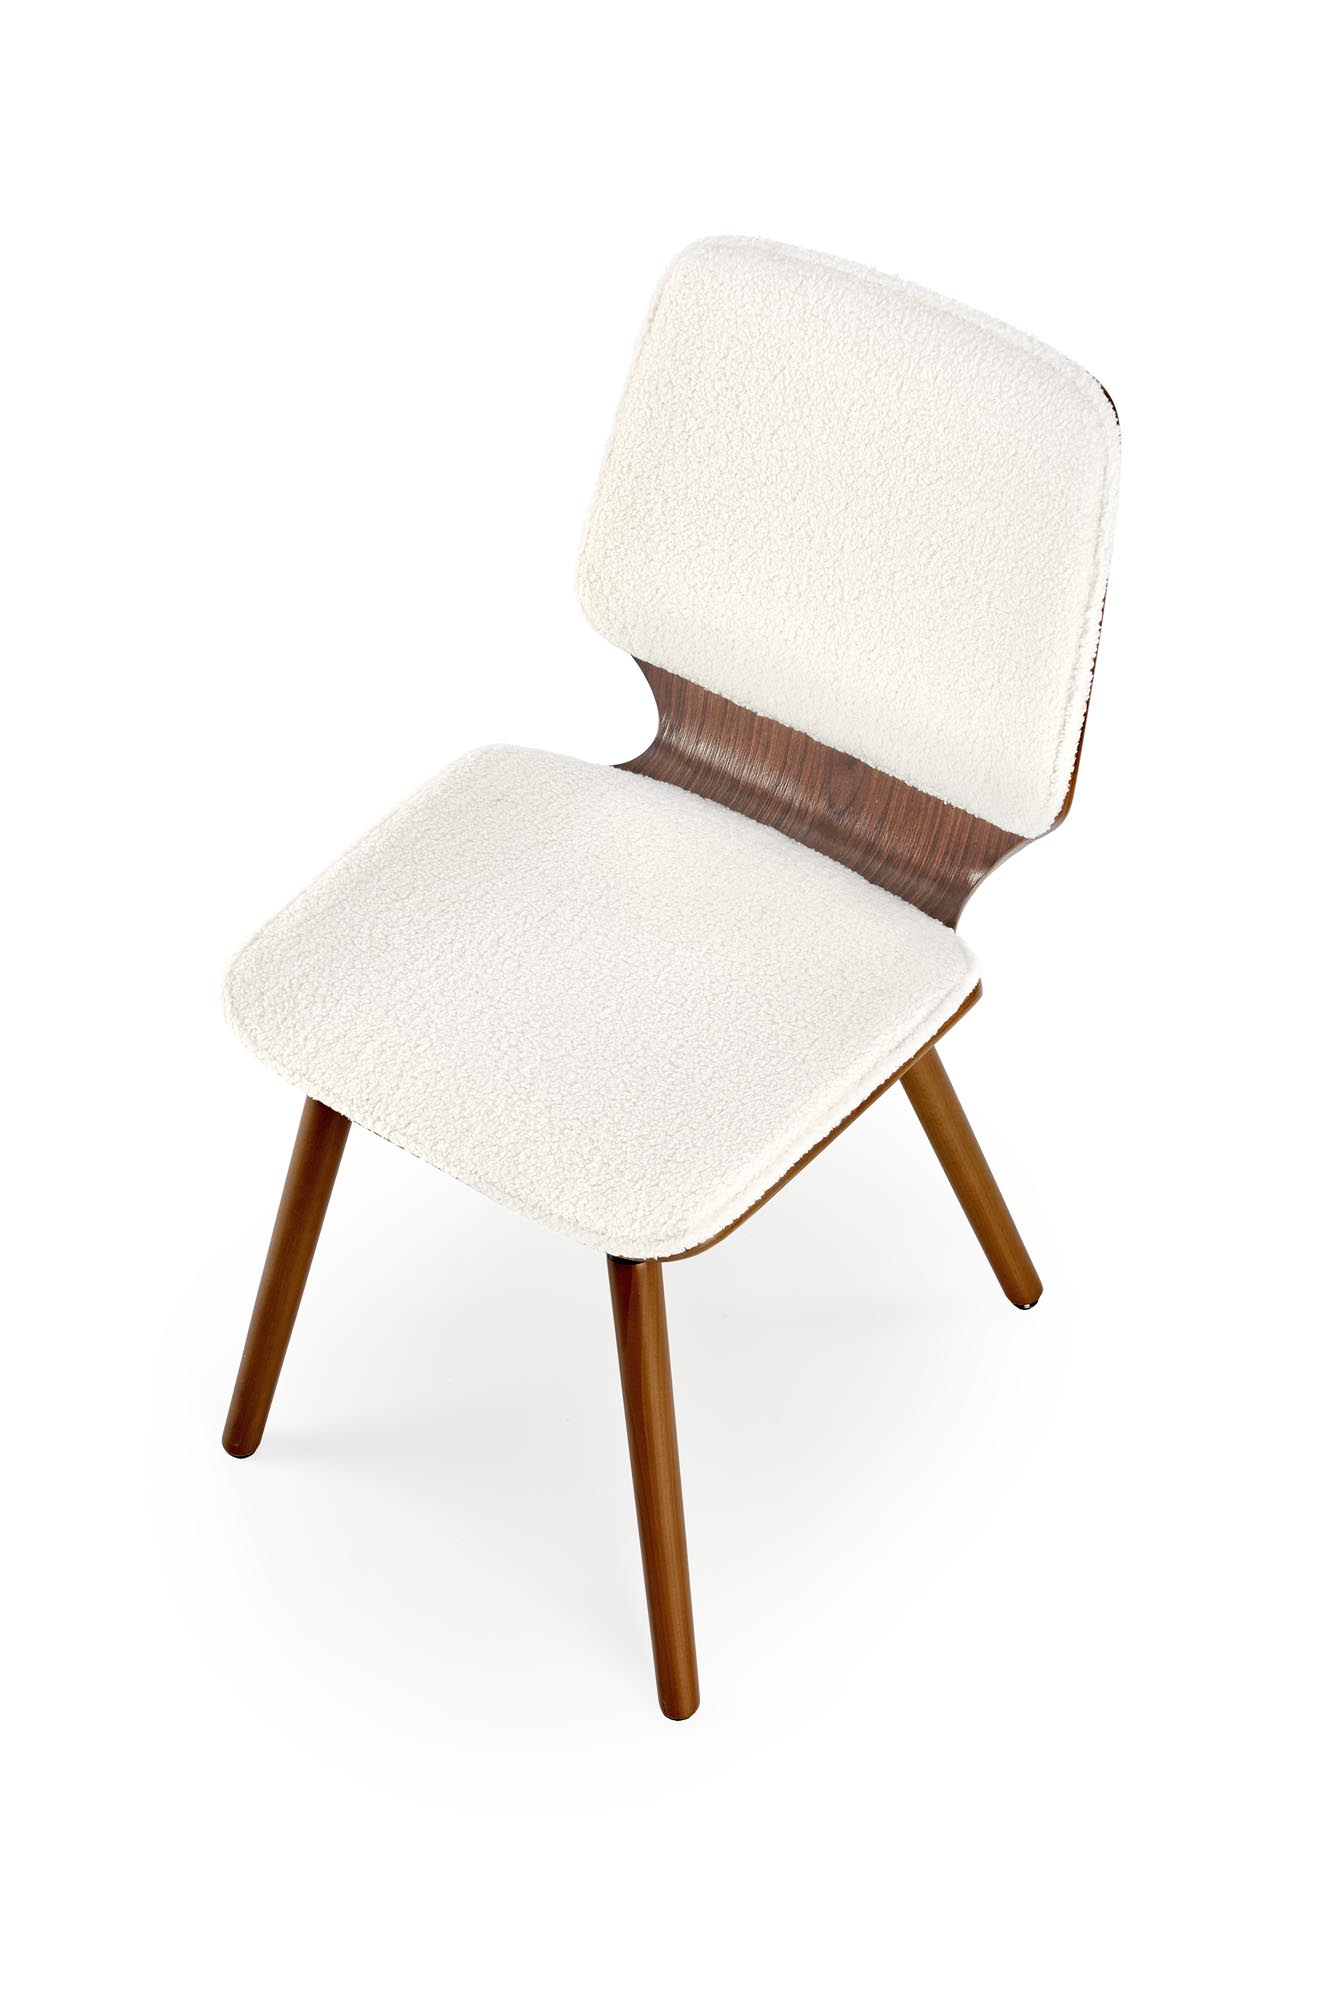 Krzesło drewniane K511 - kremowy / orzechowy krzesło drewniane k511 - kremowy / orzechowy